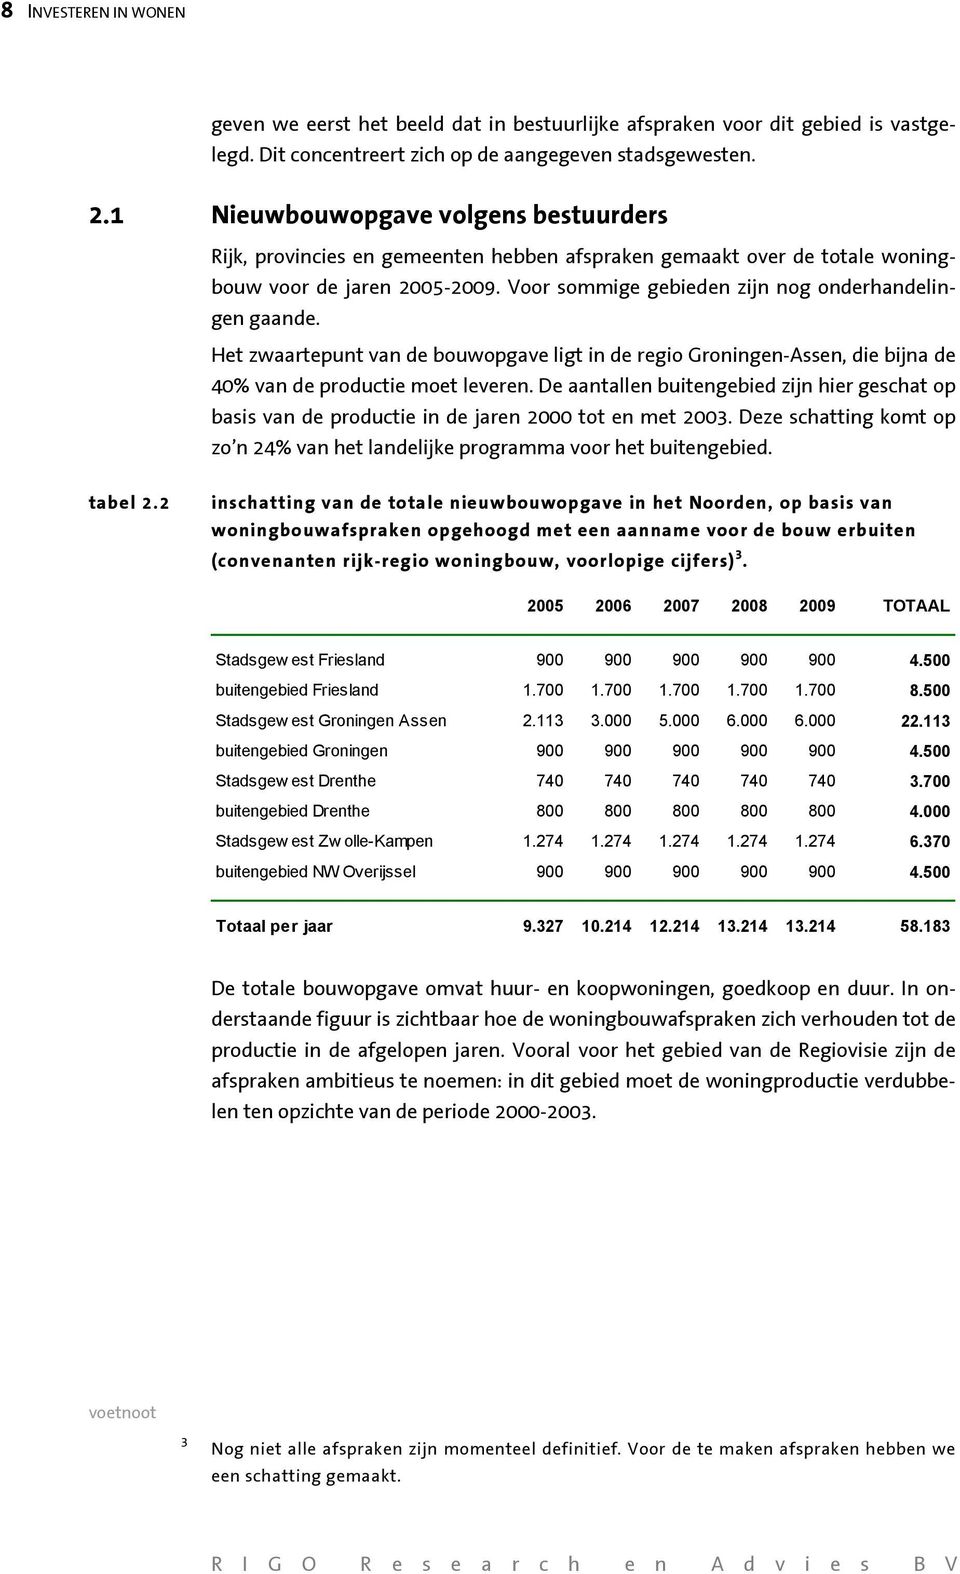 Het zwaartepunt van de bouwopgave ligt in de regio Groningen-Assen, die bijna de 40% van de productie moet leveren.